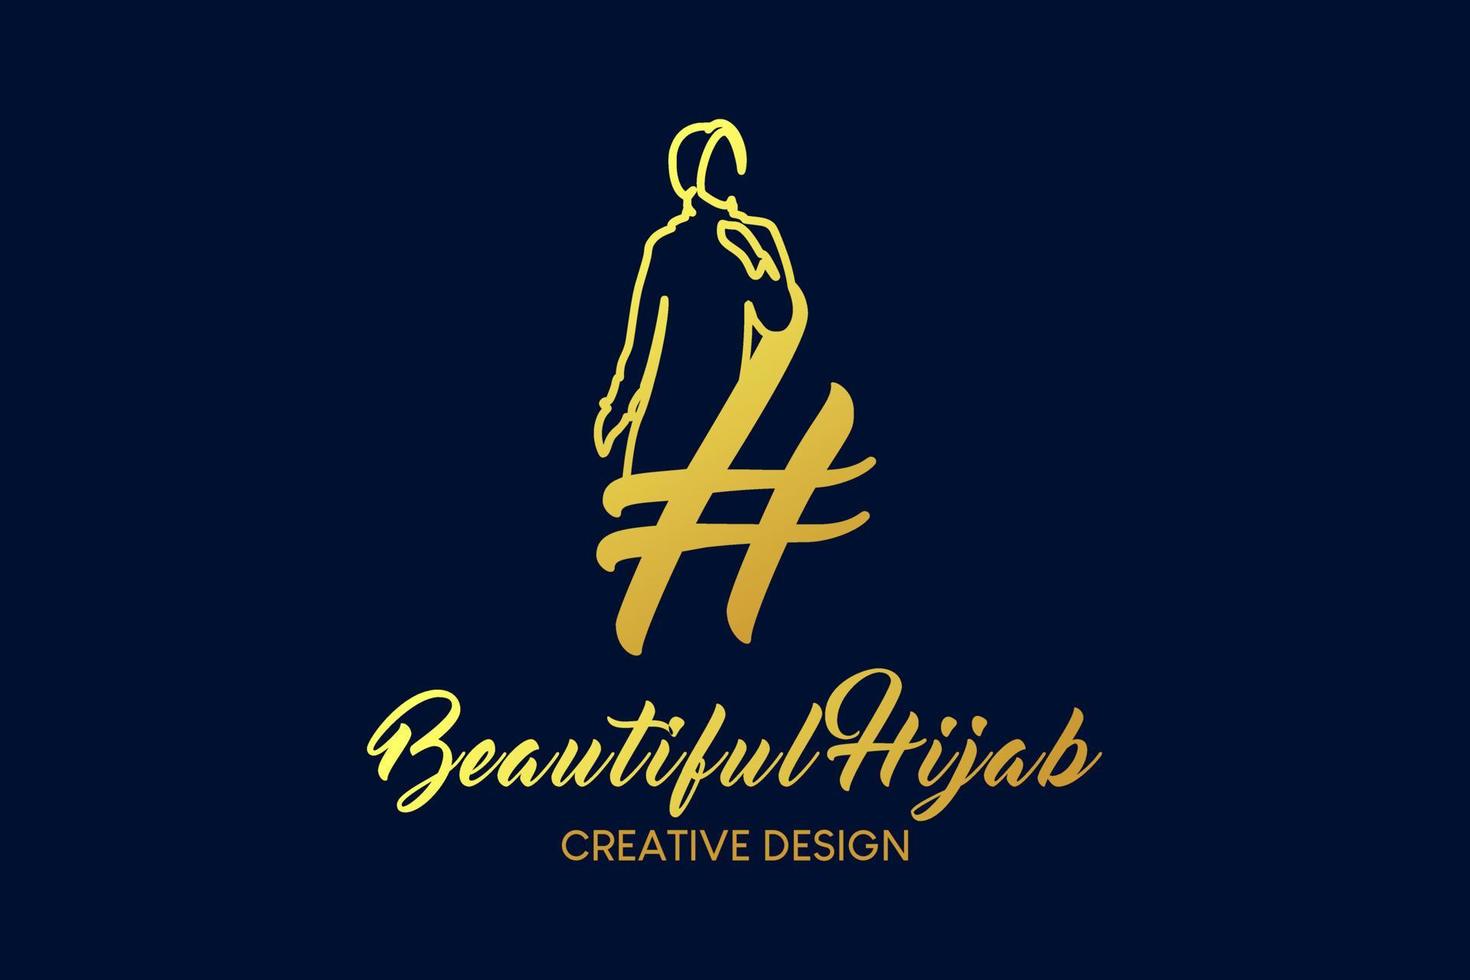 design de logotipo boutique hijab com o conceito de uma mulher vestindo um hijab em uma silhueta combinada com a letra h. ilustração em vetor logotipo de moda hijab.